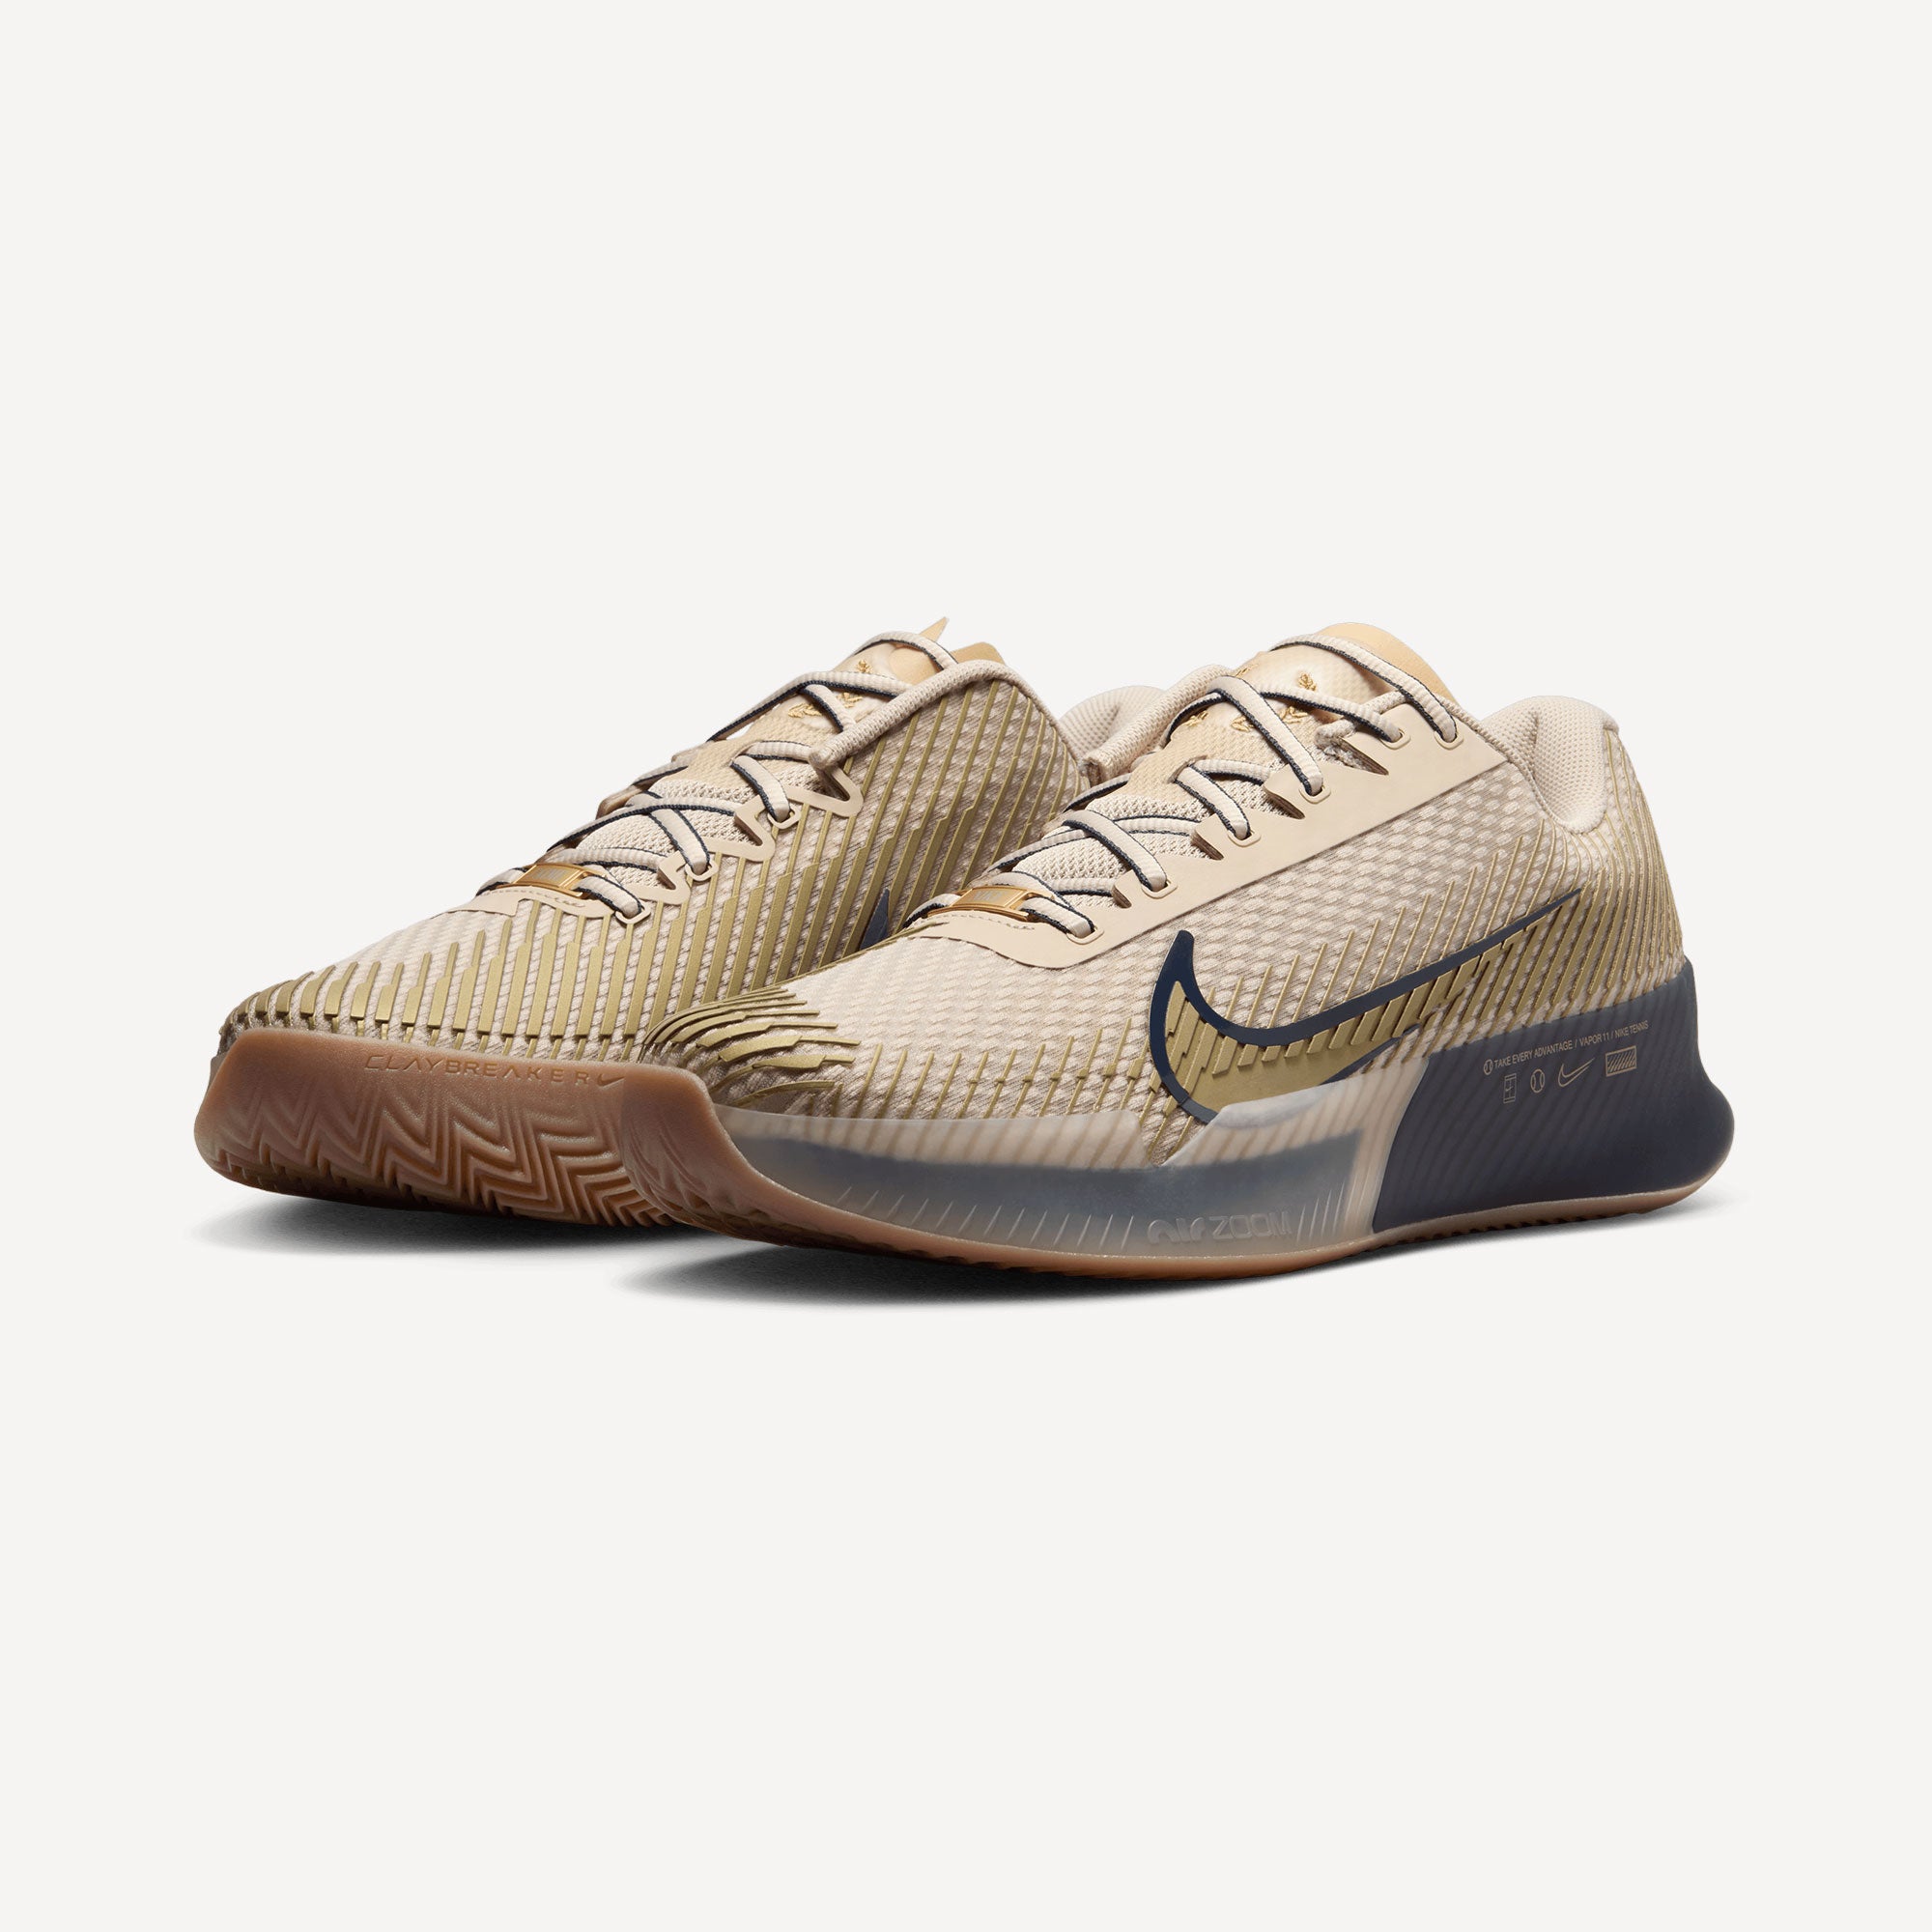 NikeCourt Air Zoom Vapor 11 Premium Men's Clay Court Tennis Shoes - Sand (4)